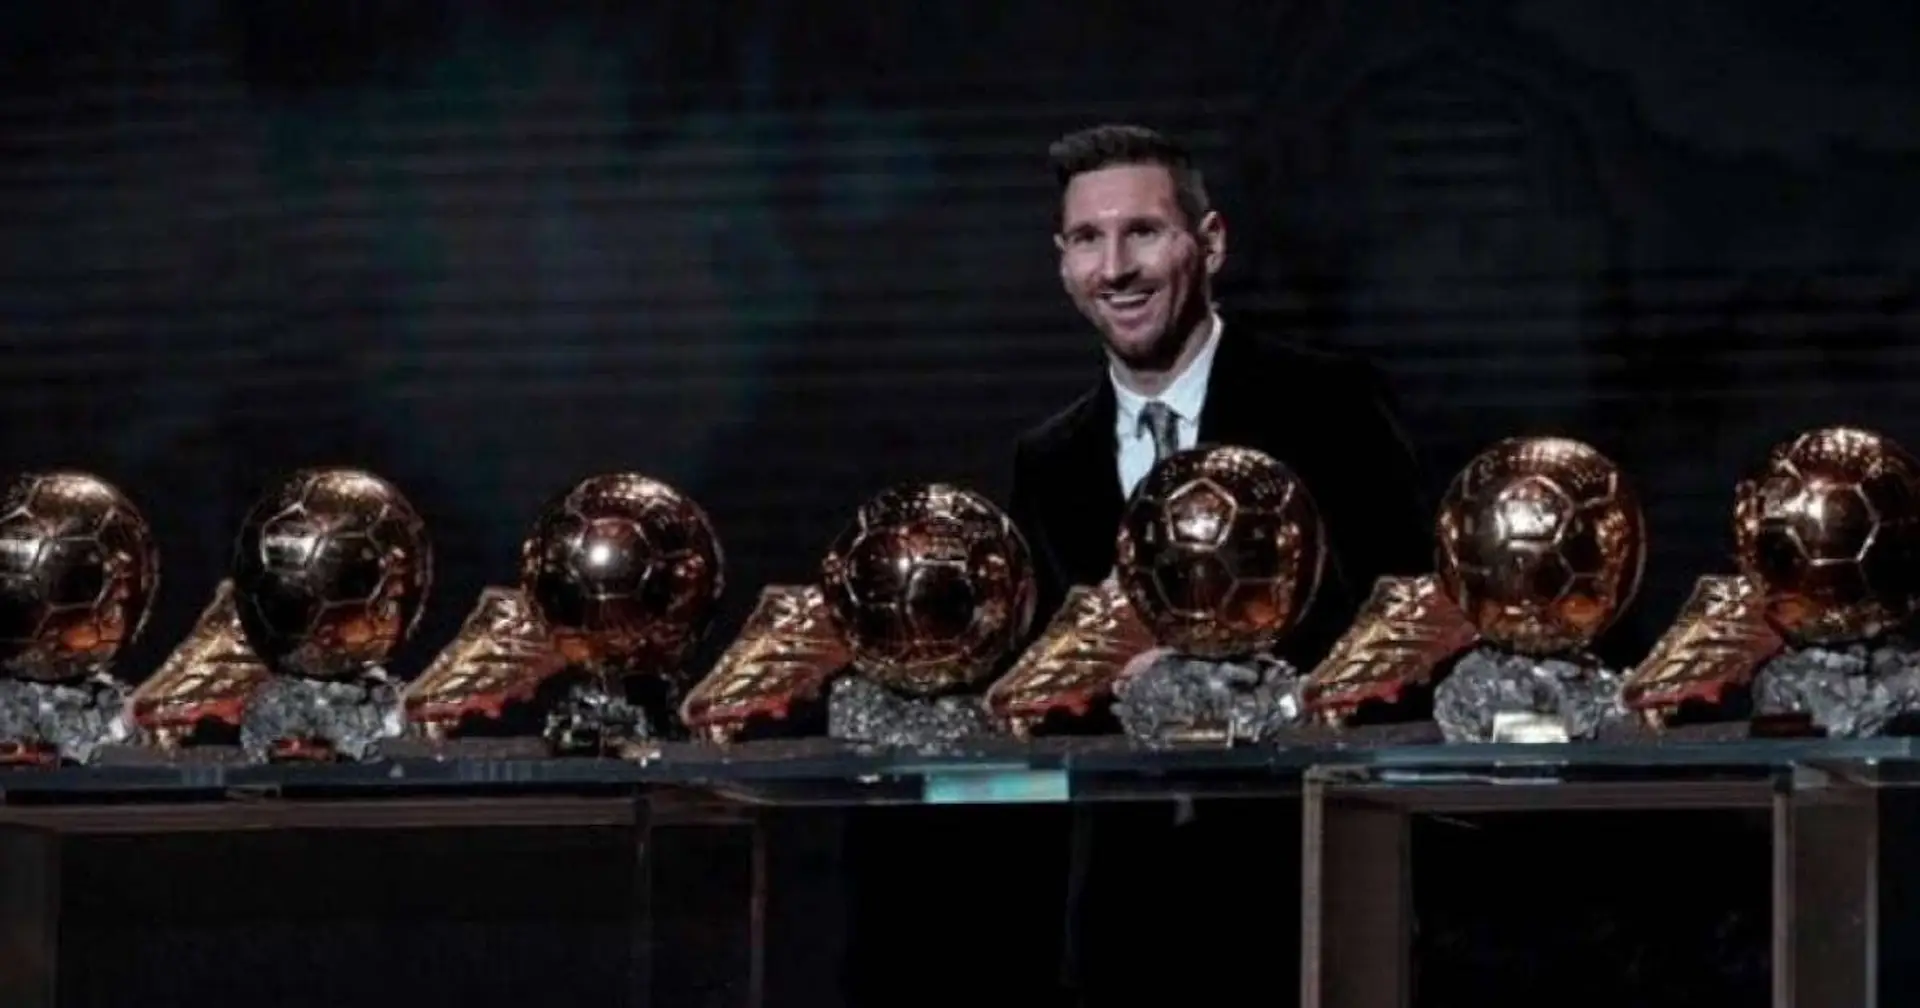 Messi absent de la liste du Ballon d'Or, une première depuis 2005